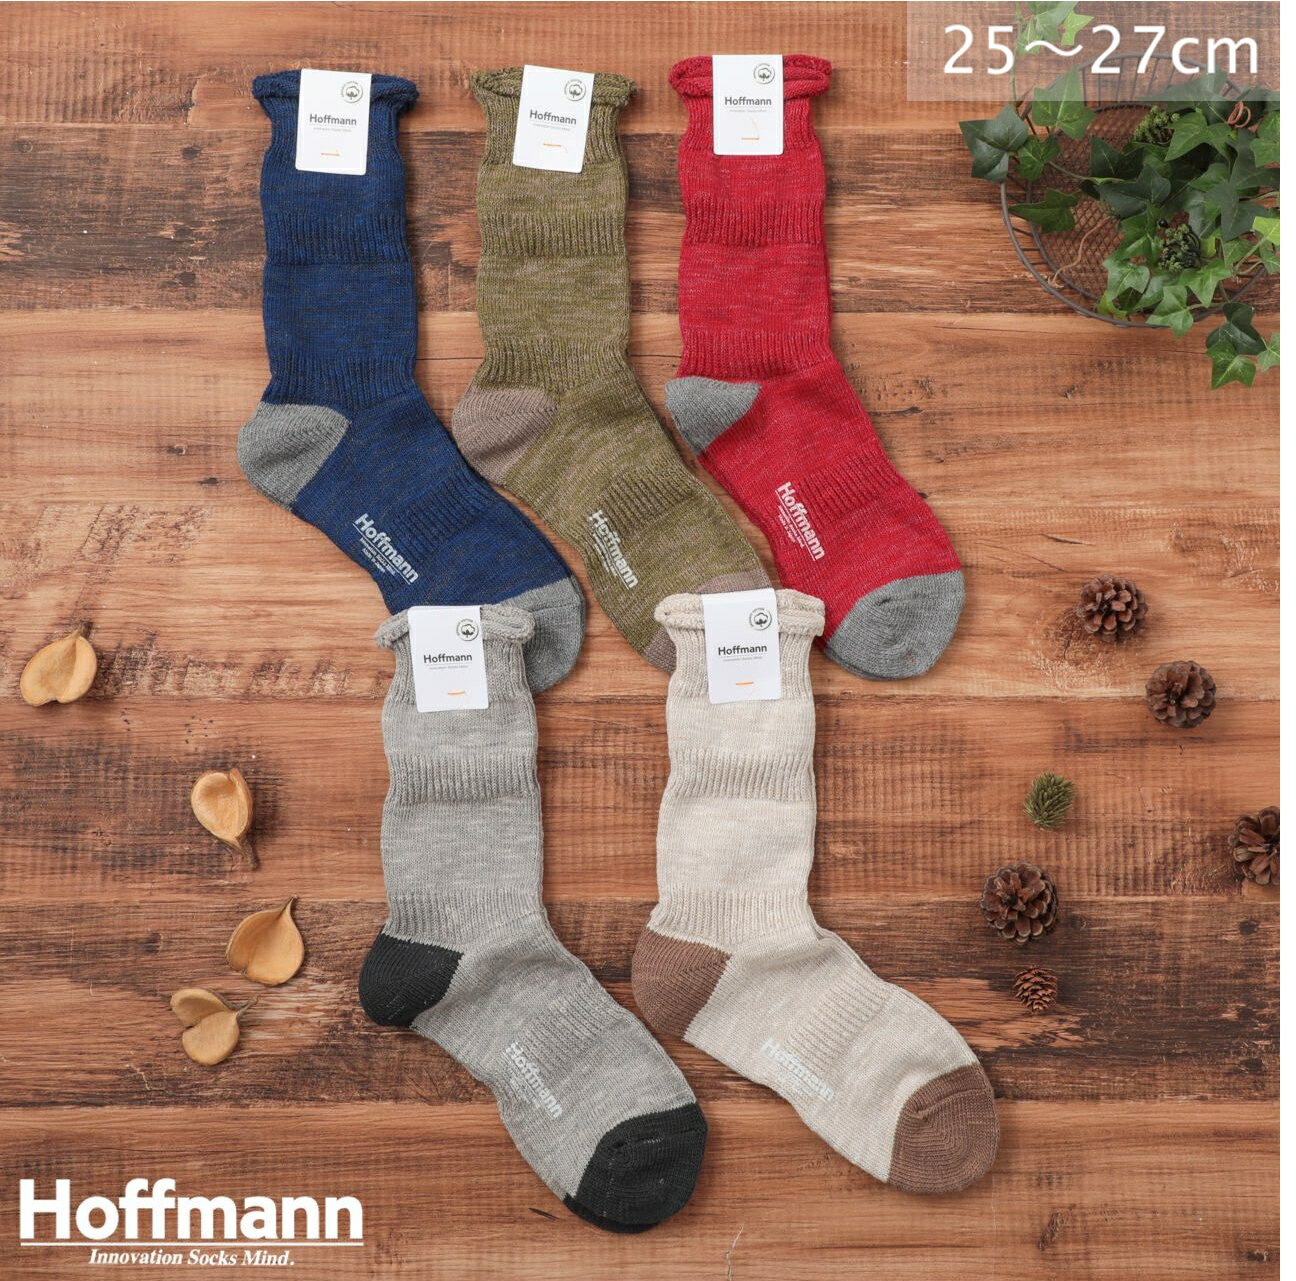 ホフマン Hoffmann ソックス 靴下 メンズ オーガニックコットン シンプル ブランド 日本製 ギフト プレゼント ブルー ベージュ レッド オリーブ ライトグレー 25-27cm 9003-25 Ho911